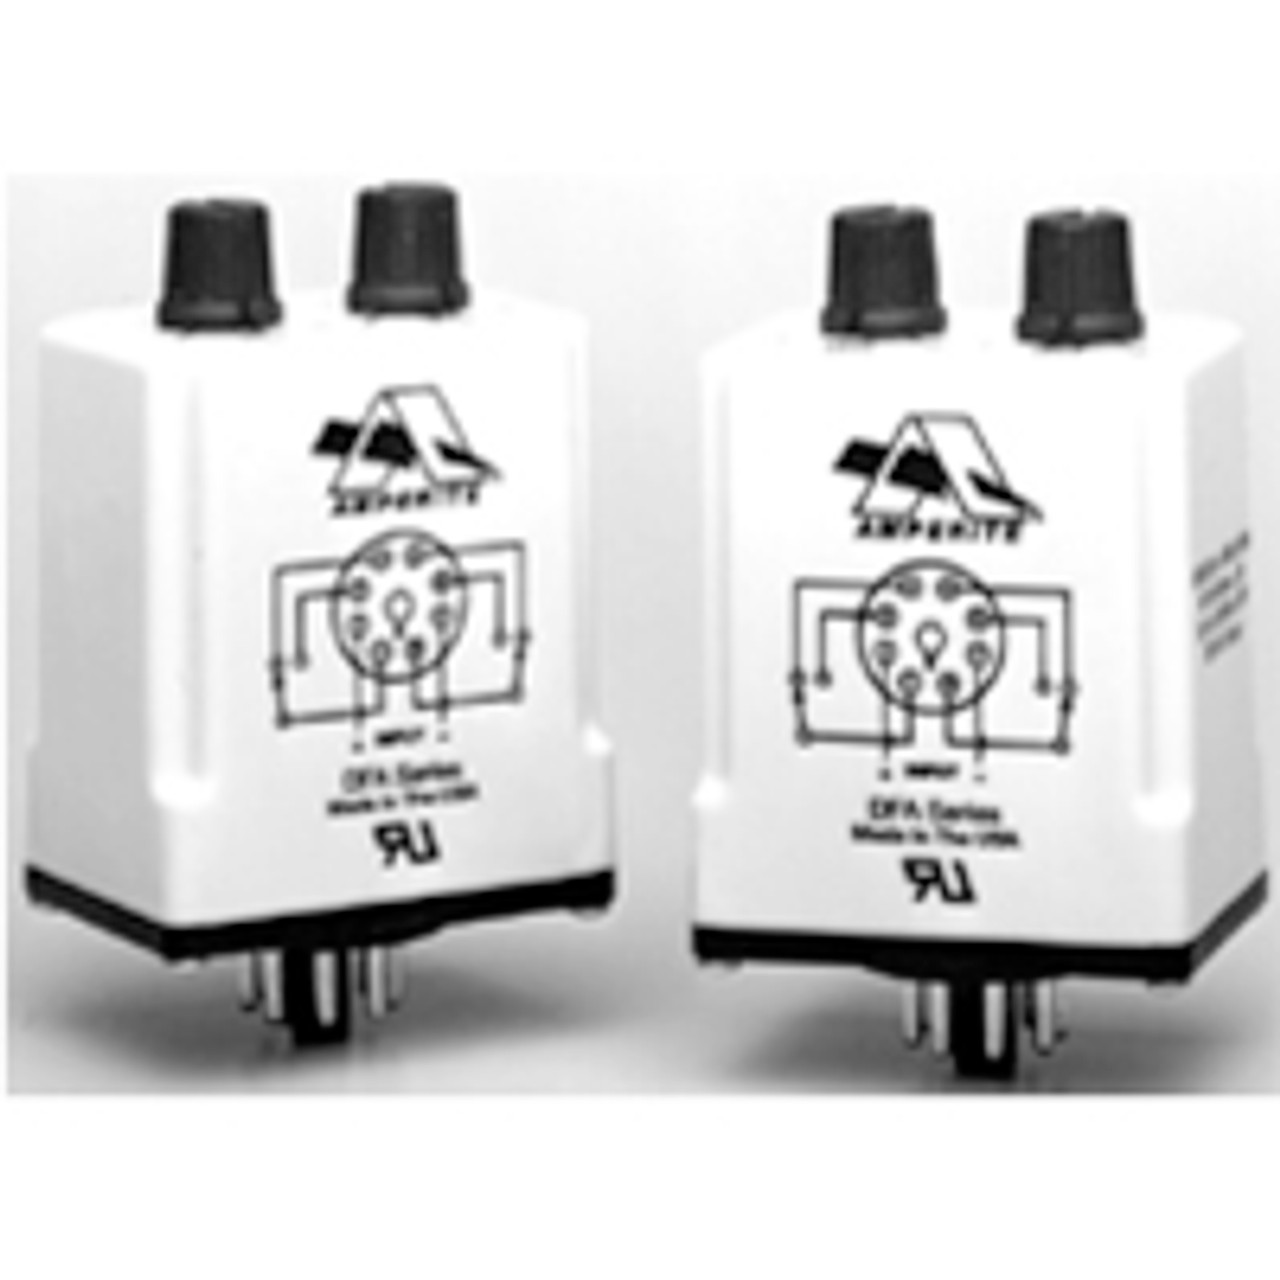 Amperite 120AA/IRLDFA Dual Rate Flashers